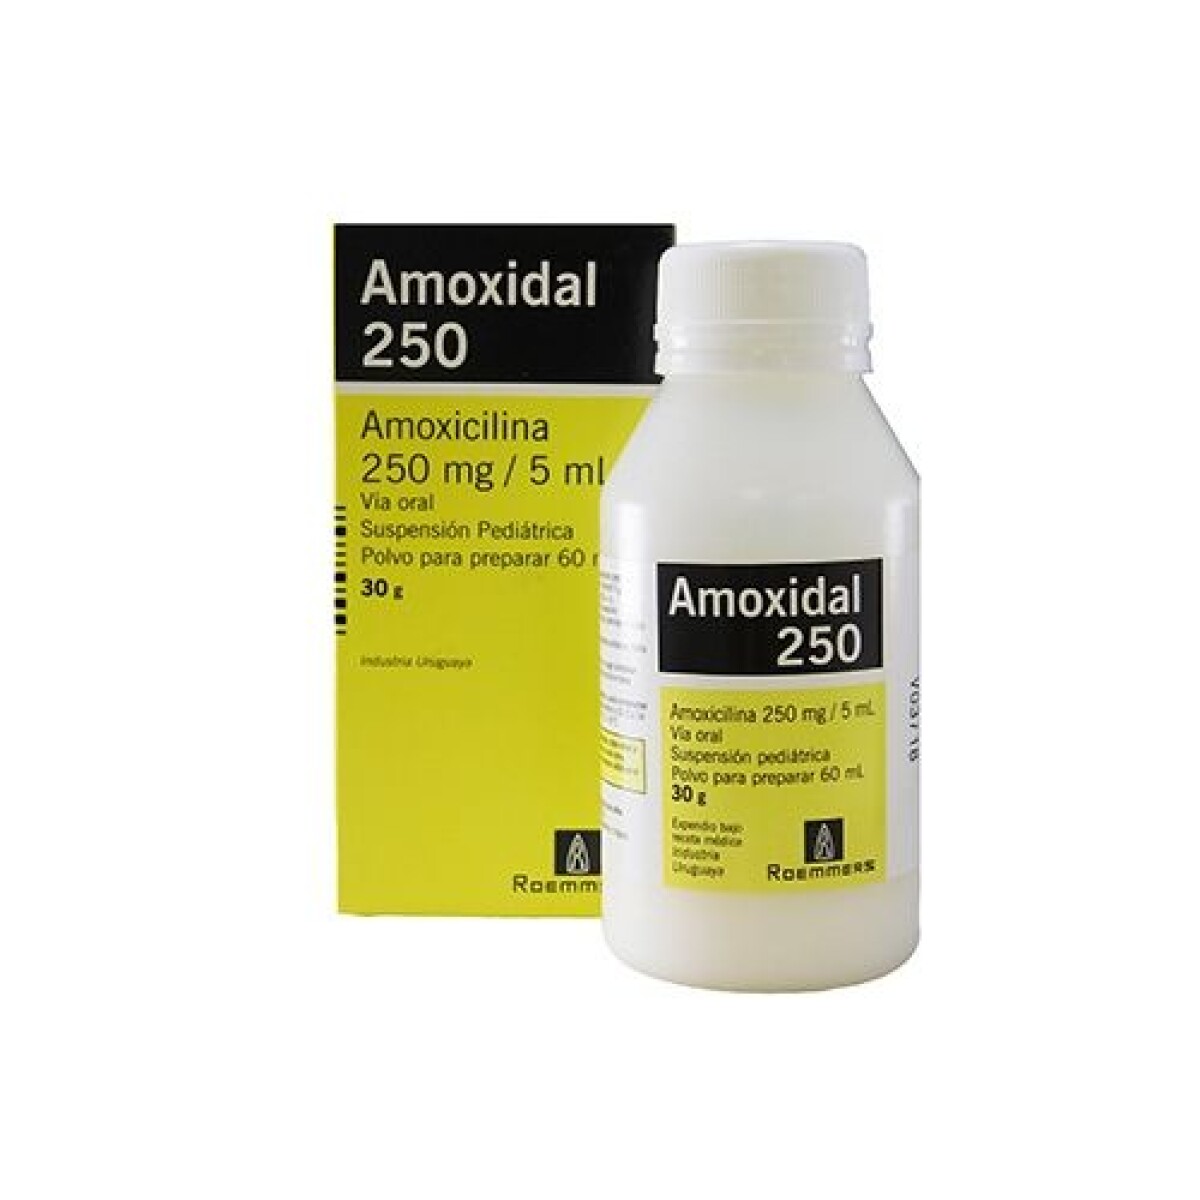 Amoxidal 250 mg Susp 60 ml 